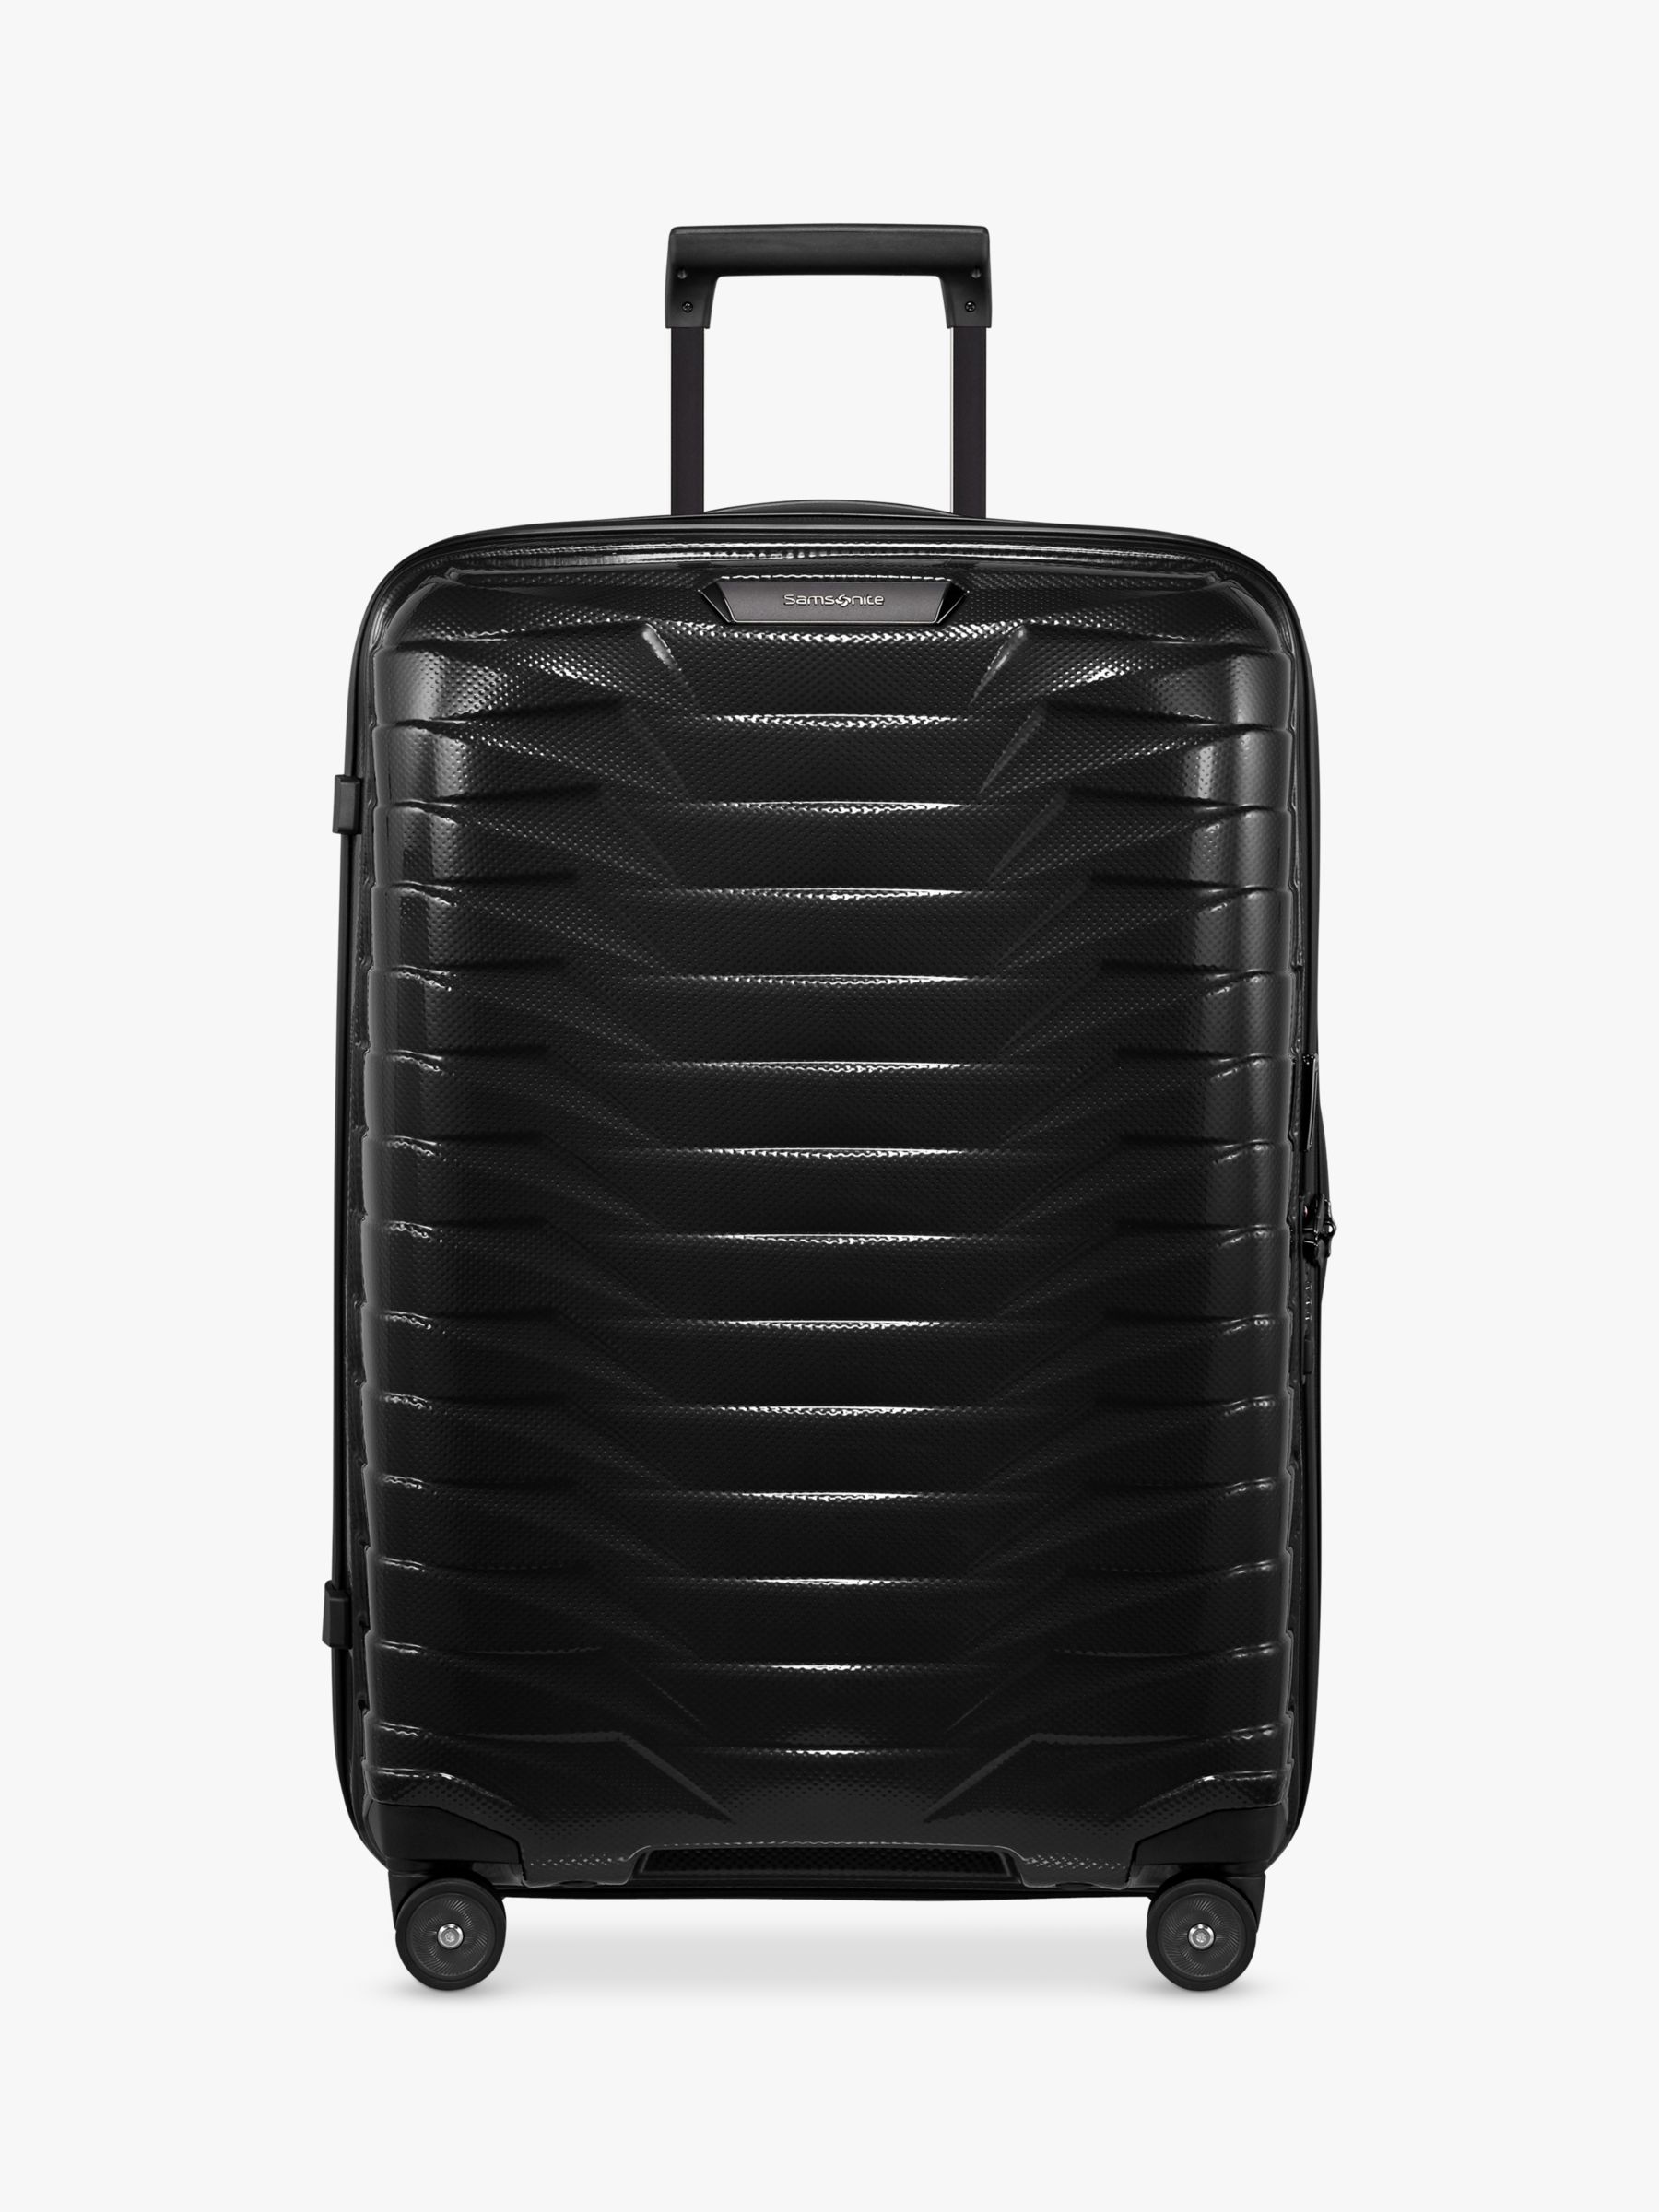 Samsonite Proxis 4-Wheel 69cm Medium Suitcase, Black